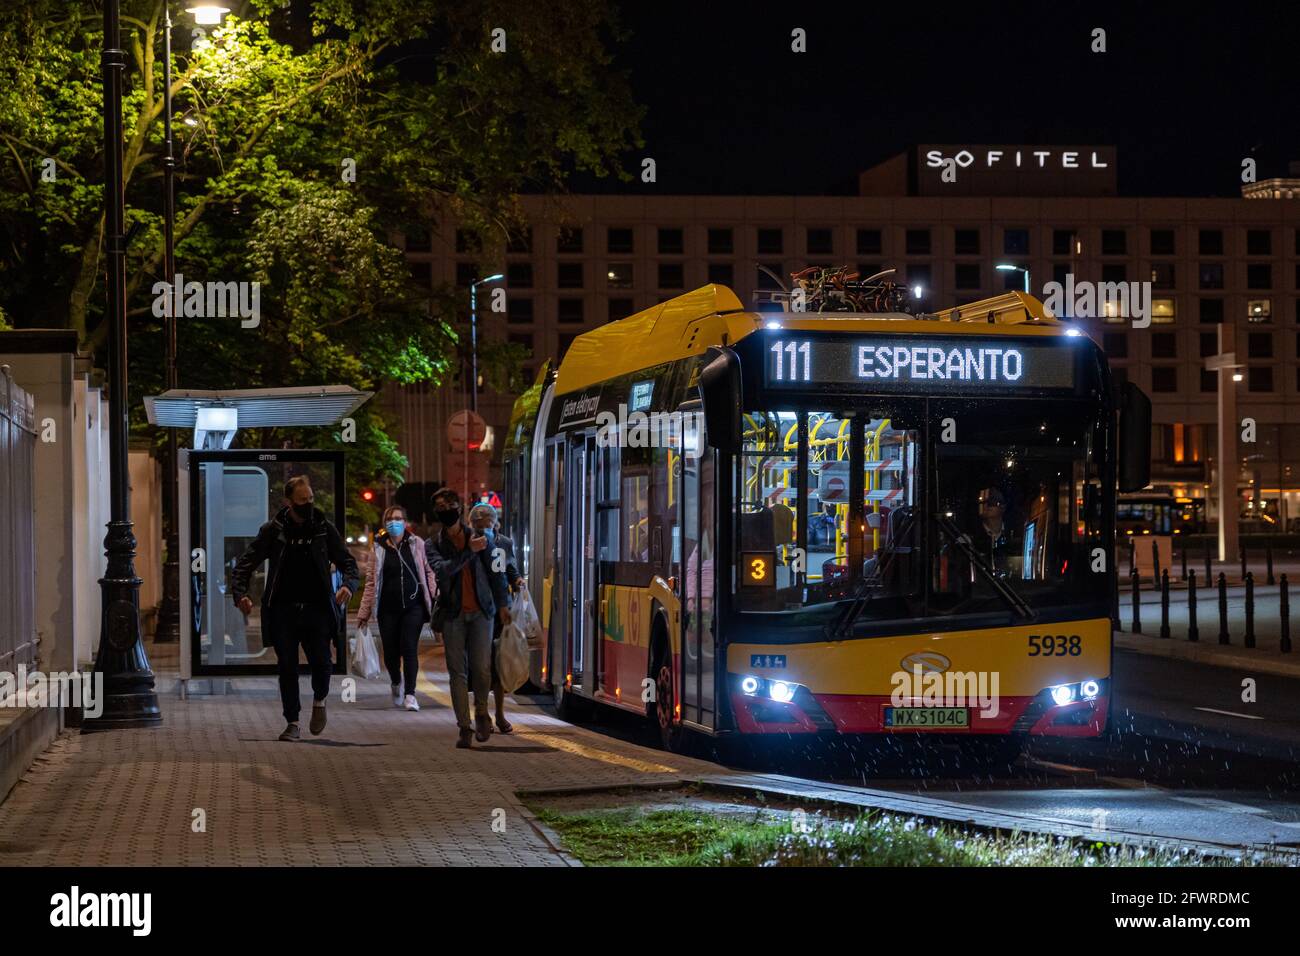 Bus no. 111 to Esperanto, Warsaw Stock Photo